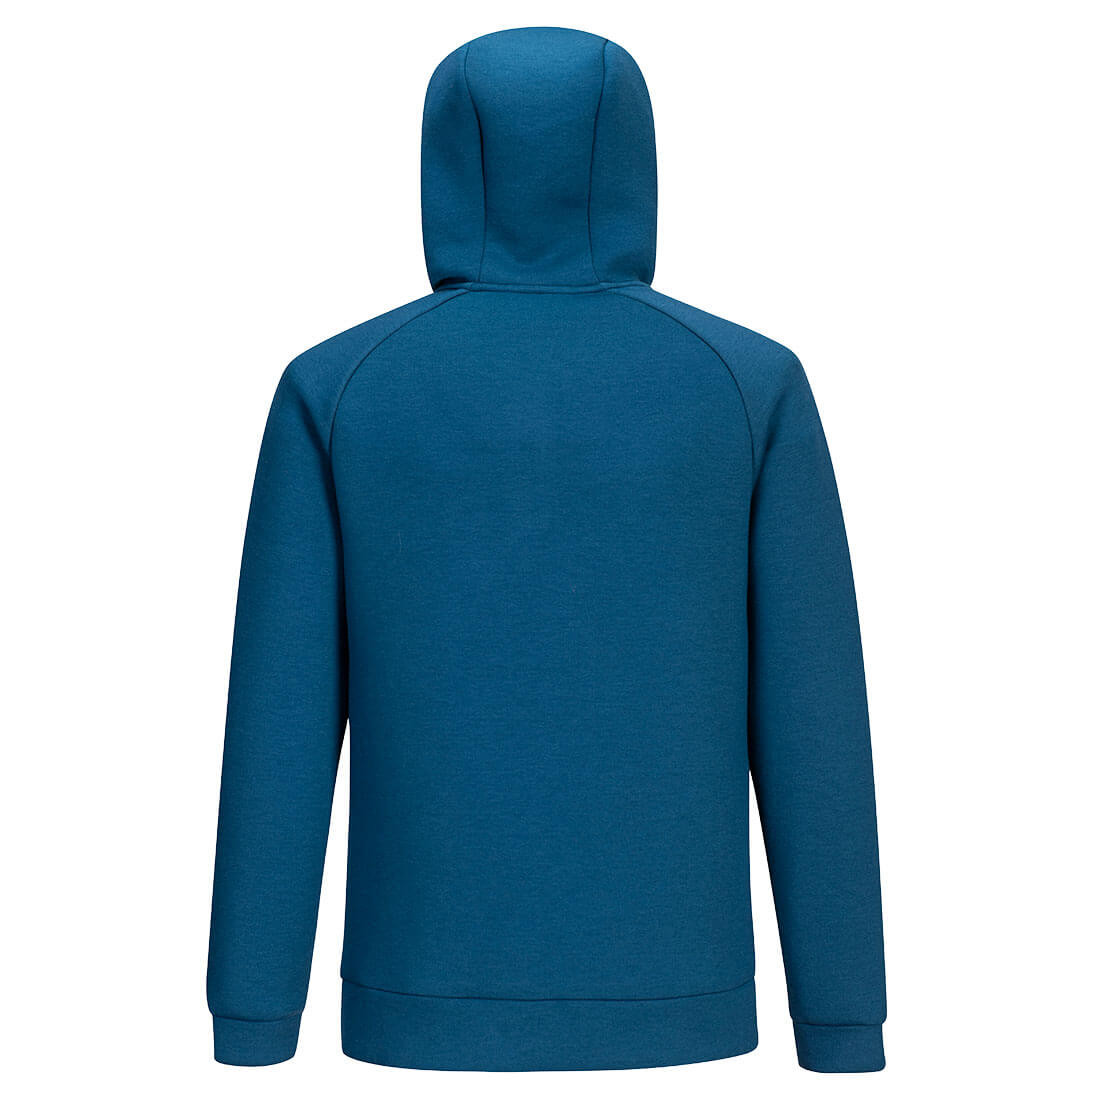 Sweatshirt à capuche DX4 avec 1/4 zip - Les vêtements de protection